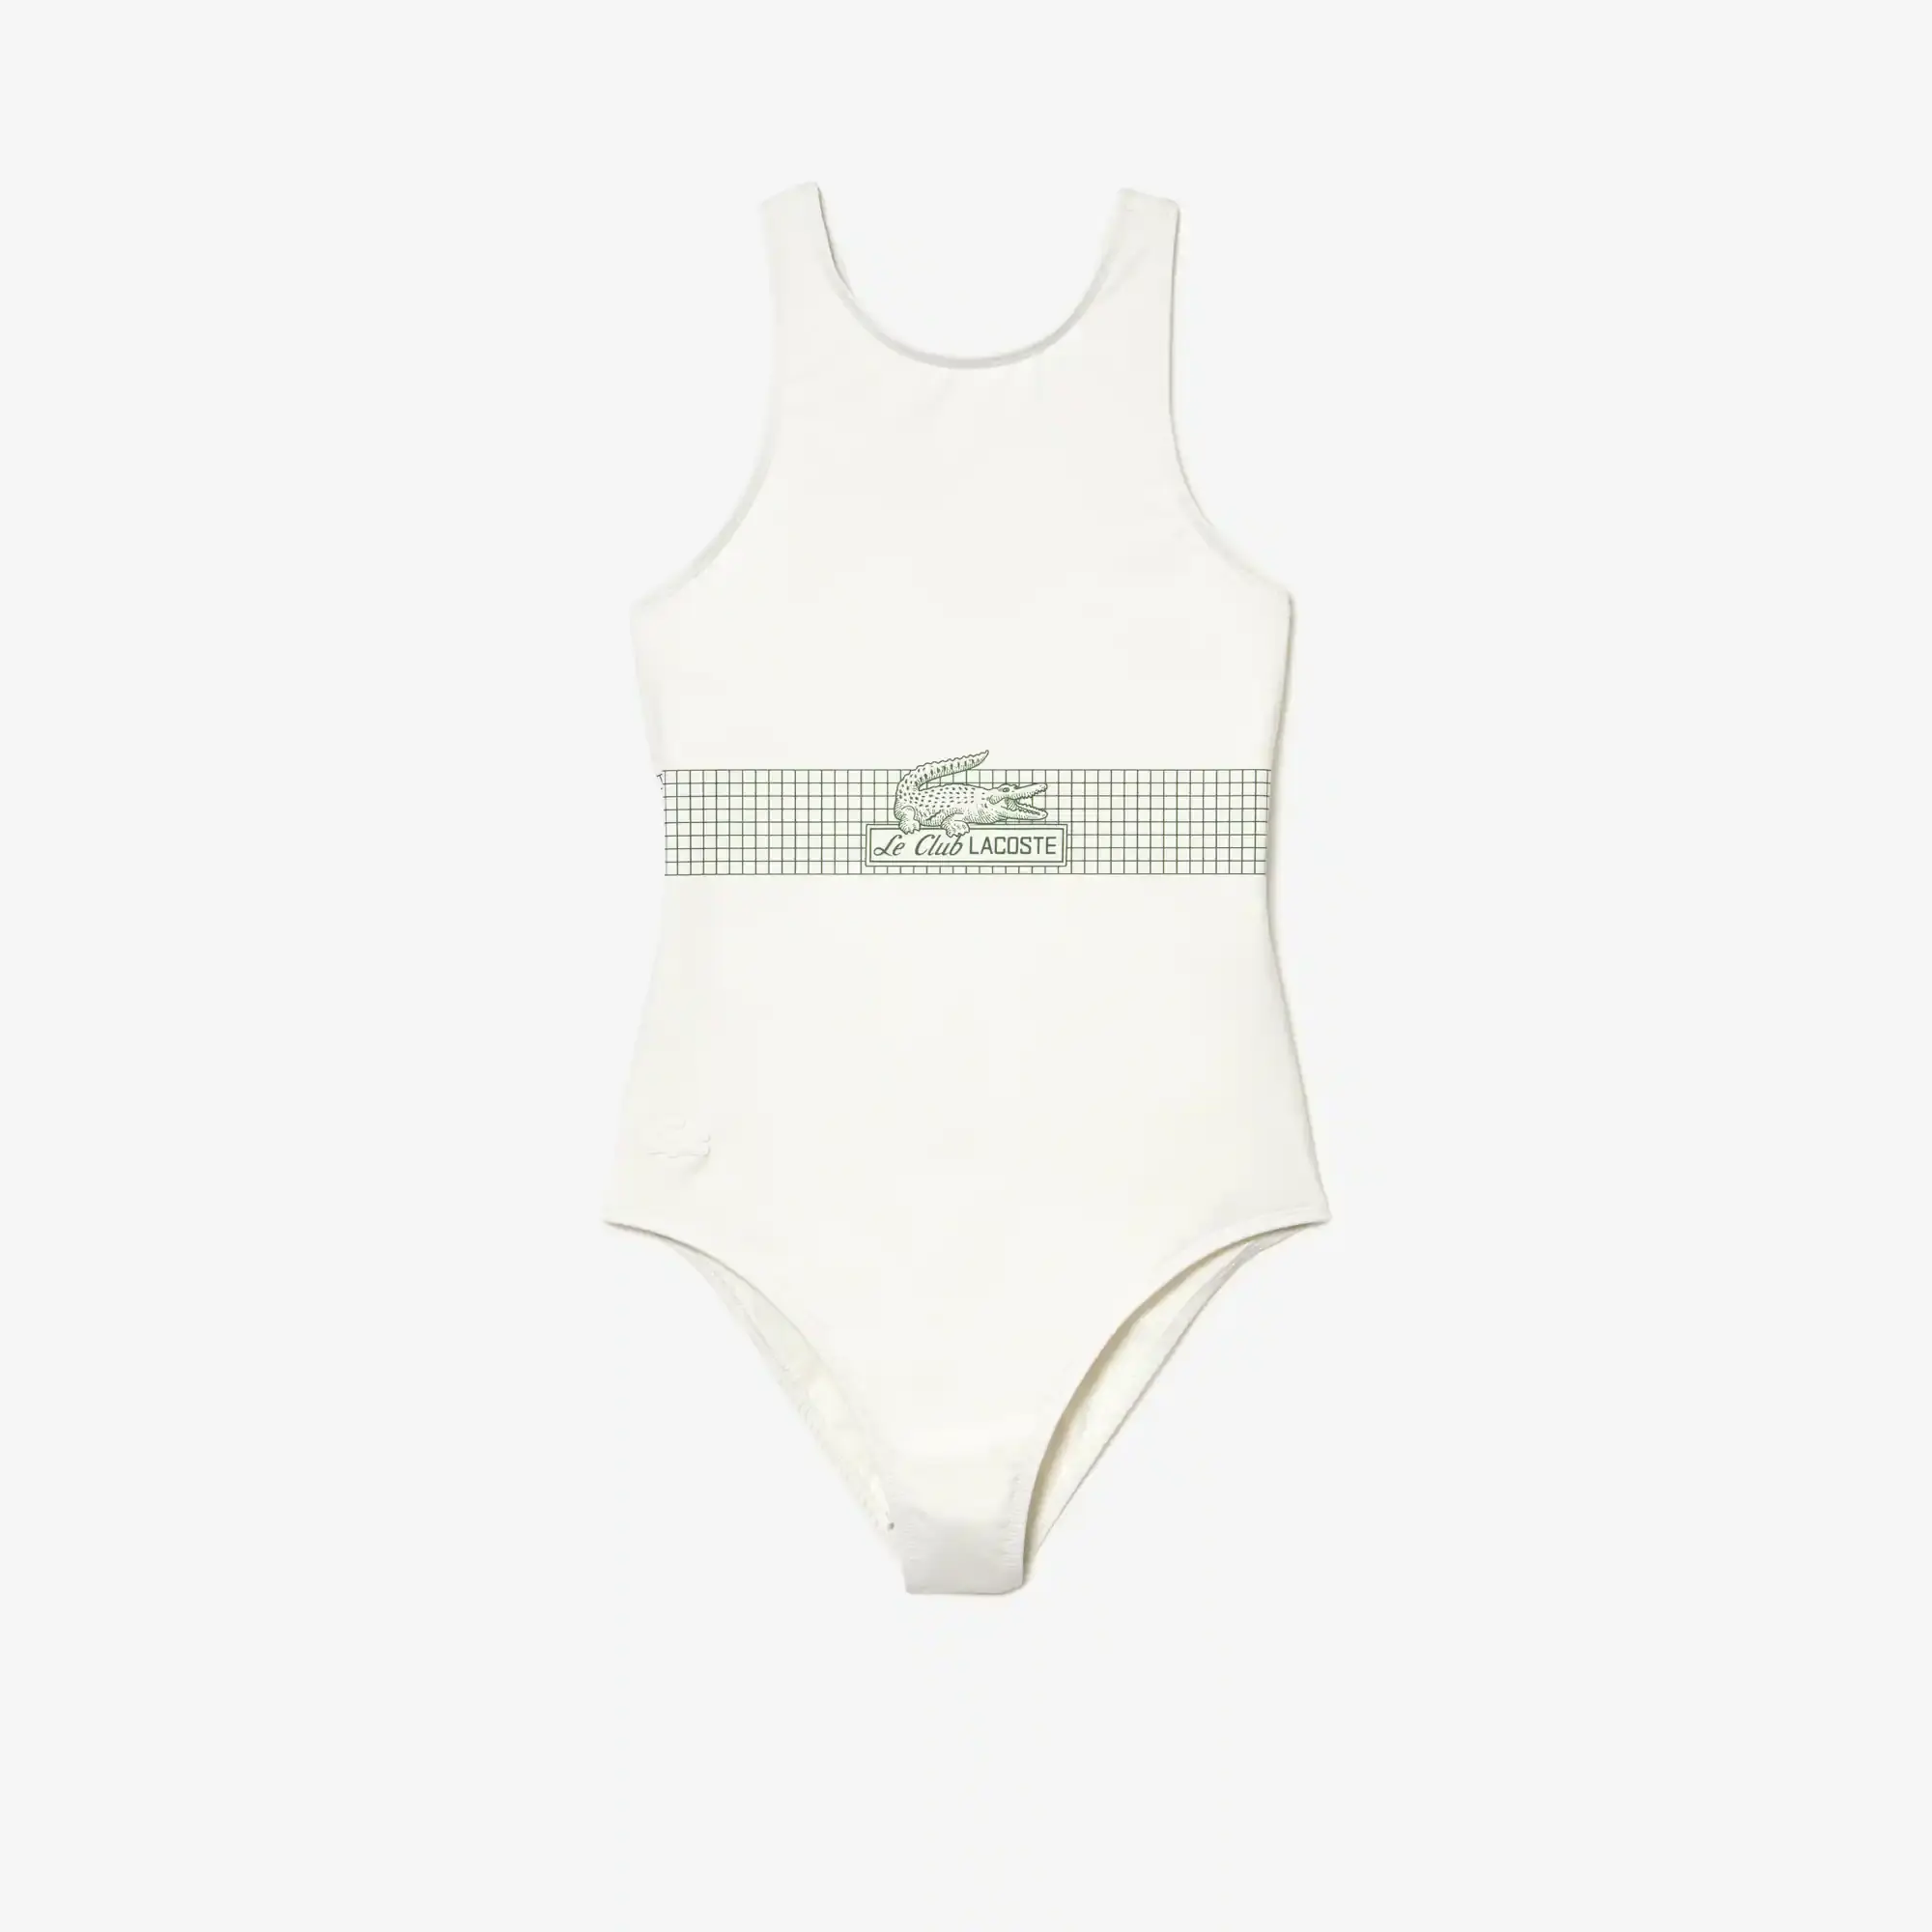 Lacoste Women’s Lacoste Net Print Swimsuit. 2